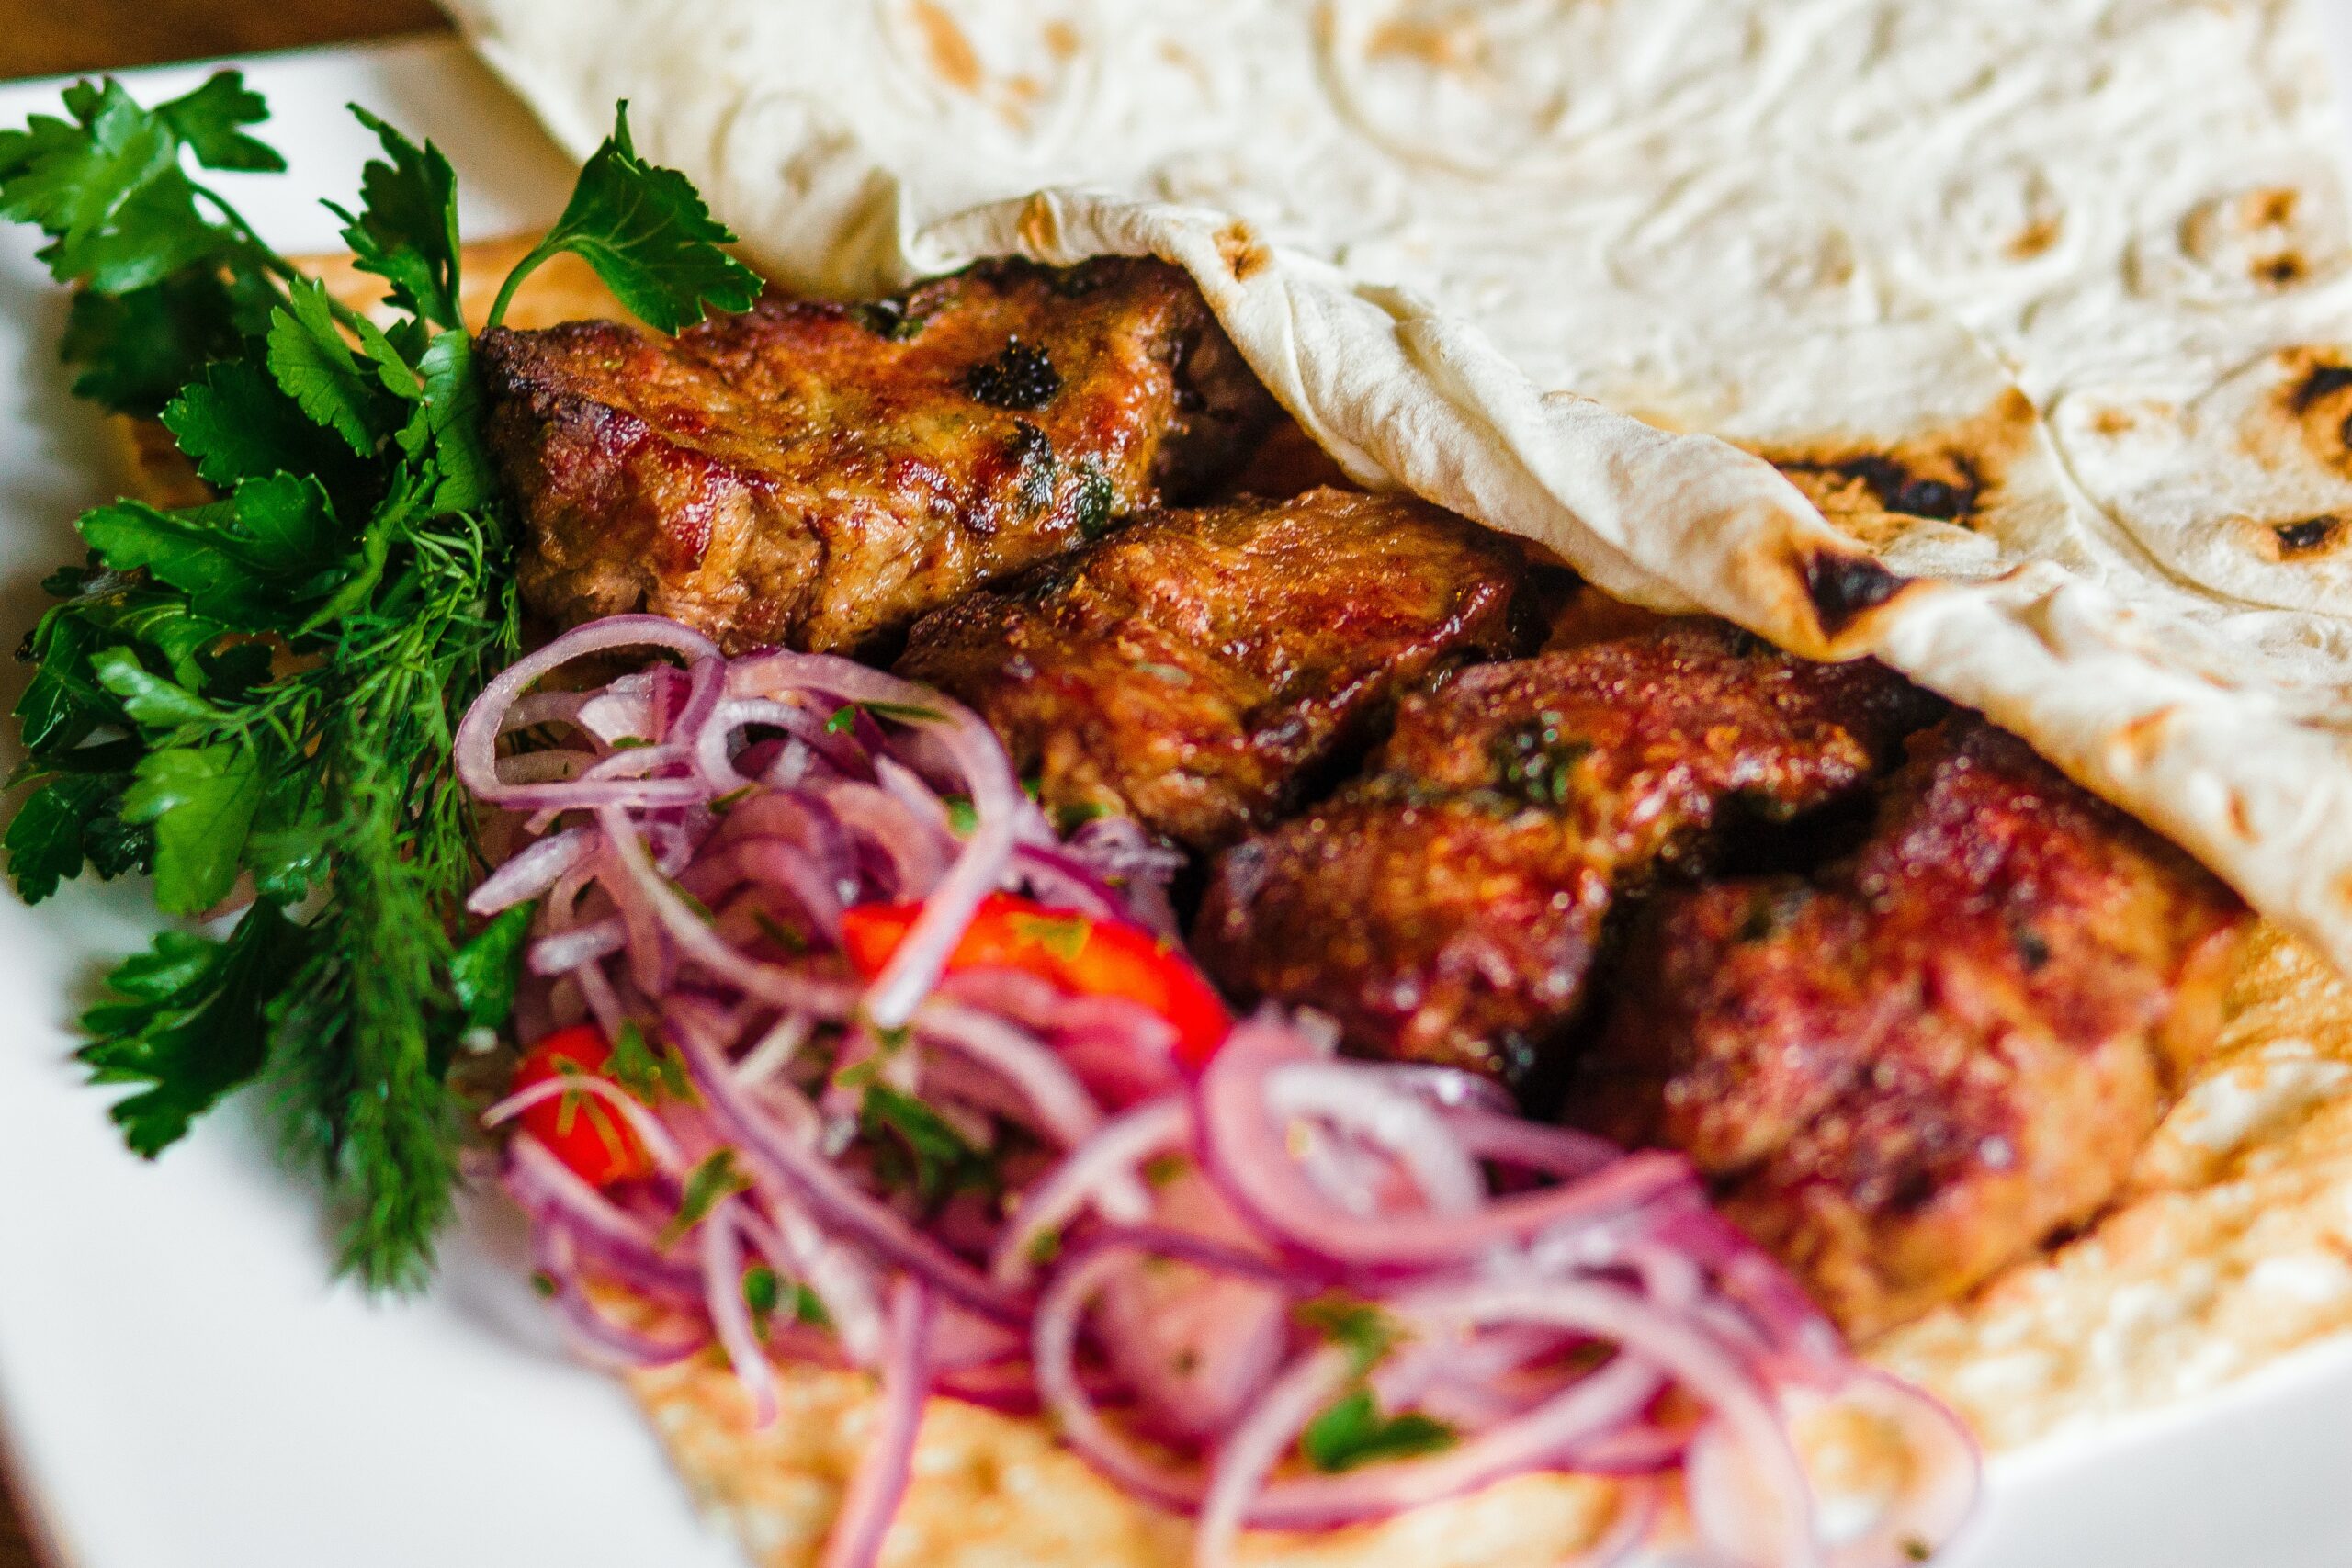 Przyprawa do kebaba — sekret smaku tureckiej kuchni